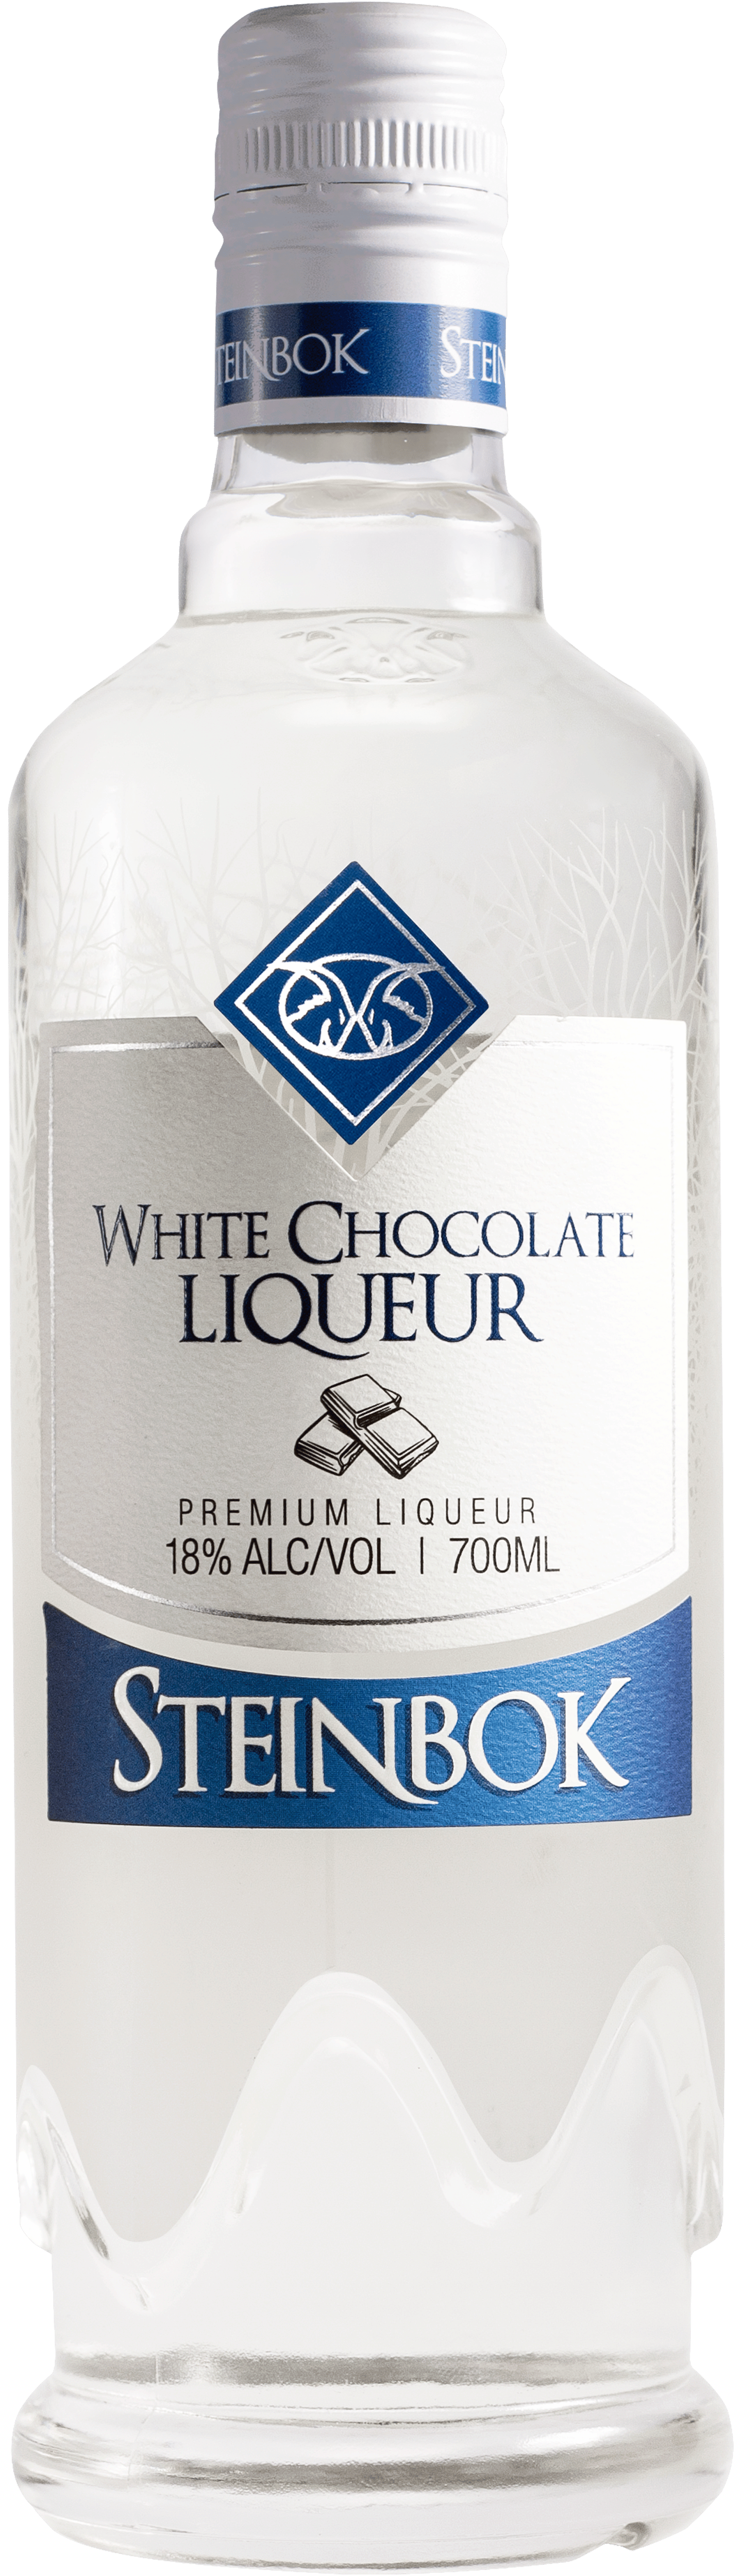 White Chocolate Liqueur